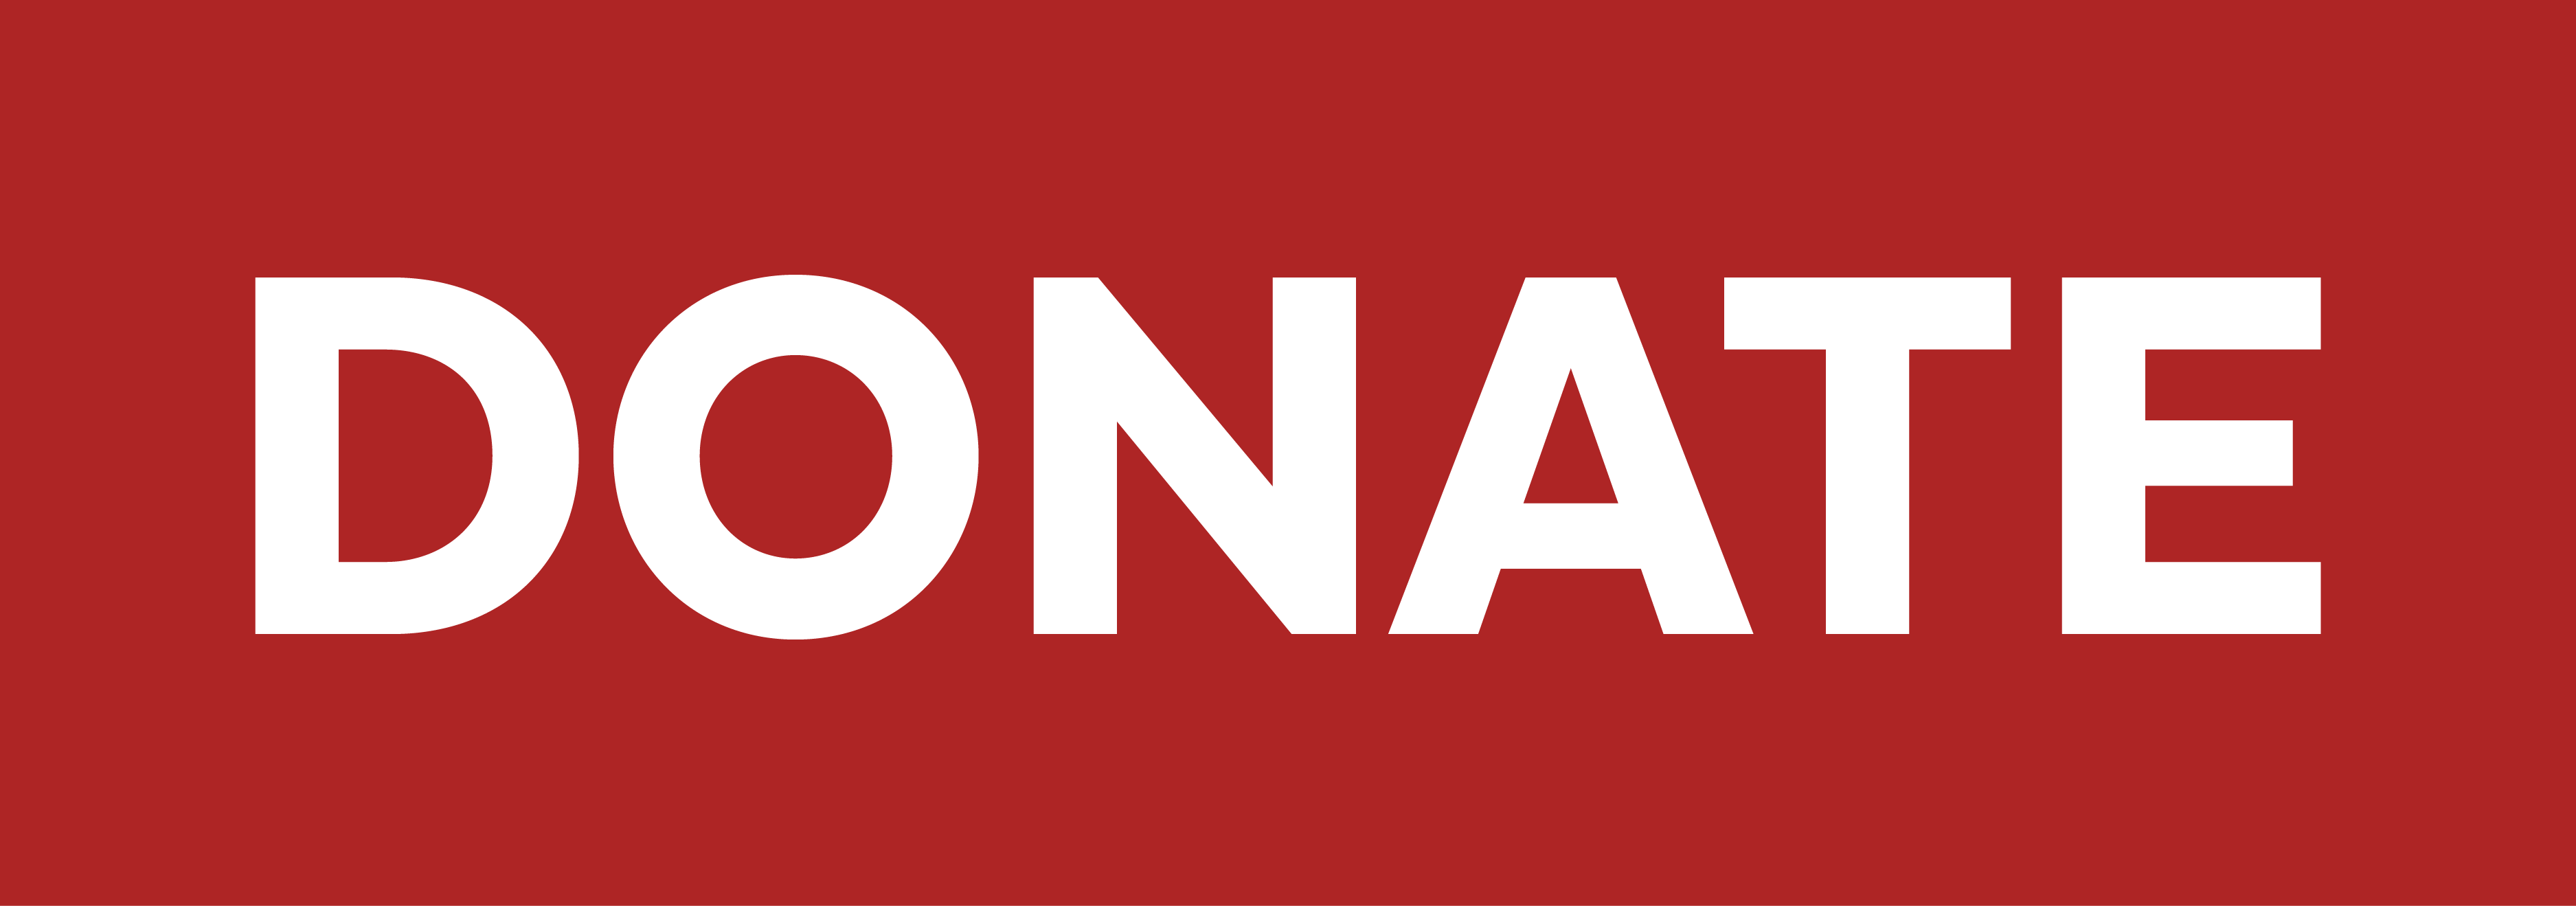 DonateButton-01.png